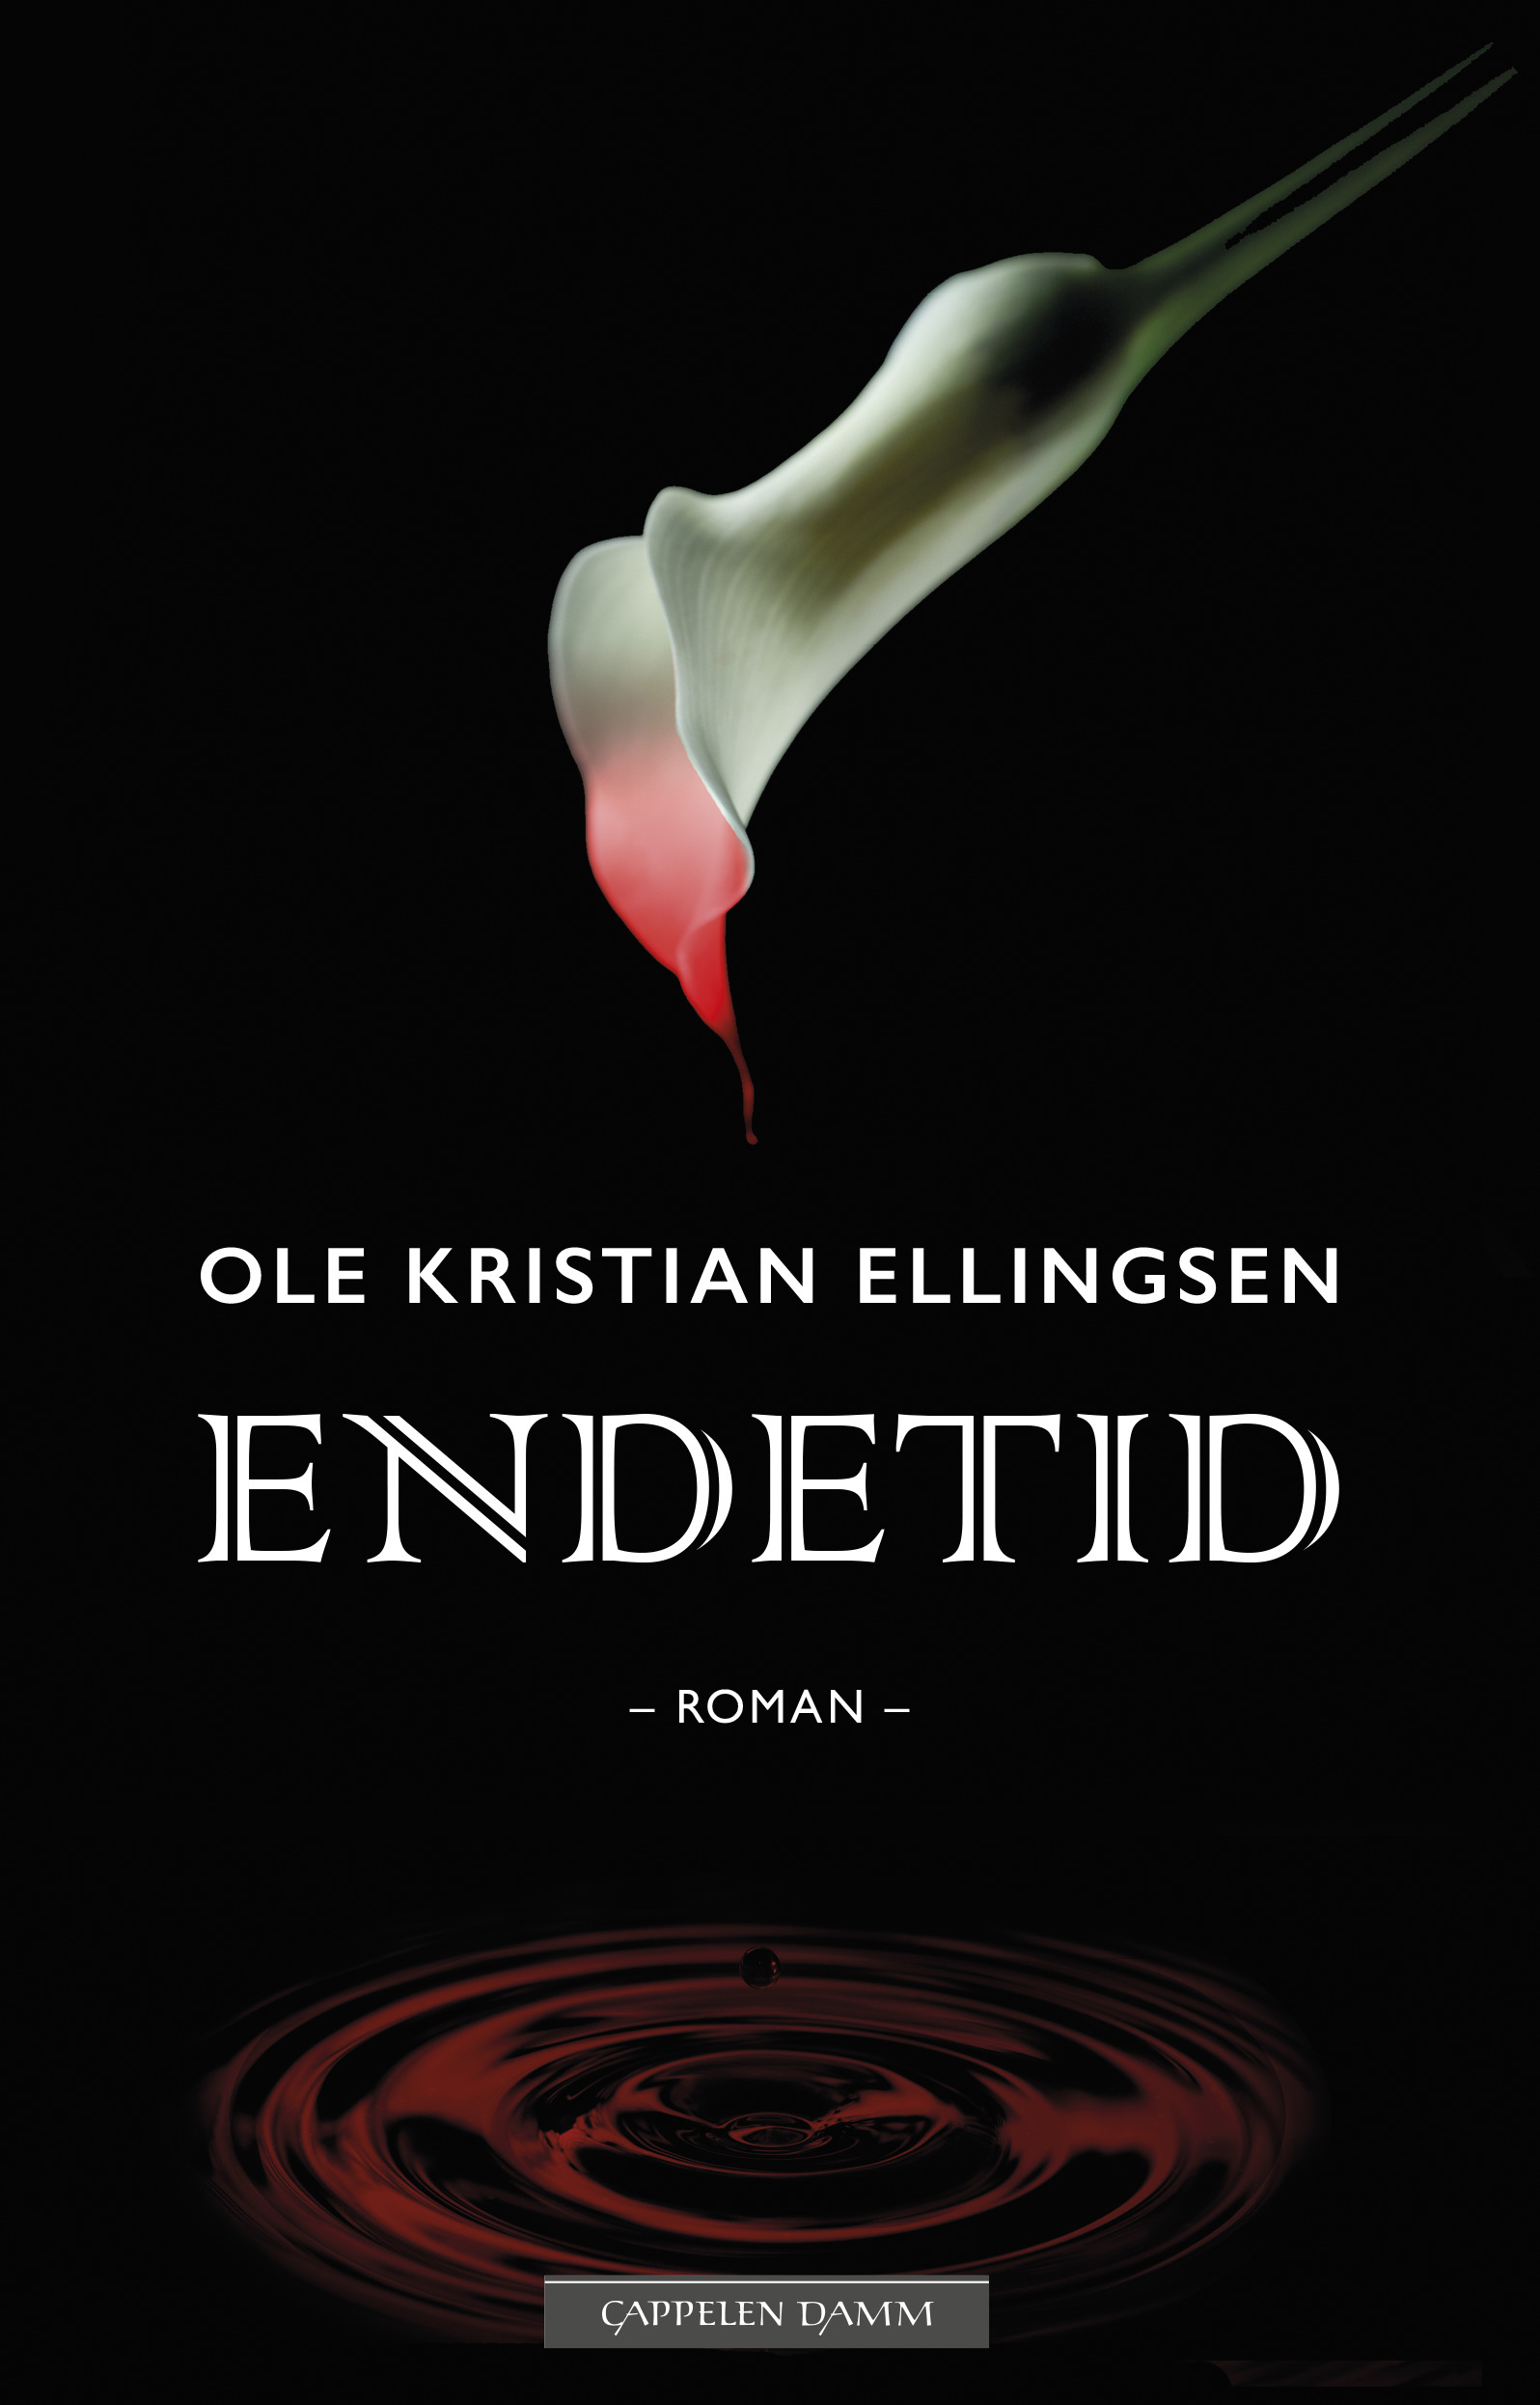 Endetid av Ole Kristian Ellingsen er en sterk og tankevekkende roman om tro, tvil og maktesløshet, løst basert på den såkalte Martine-saken